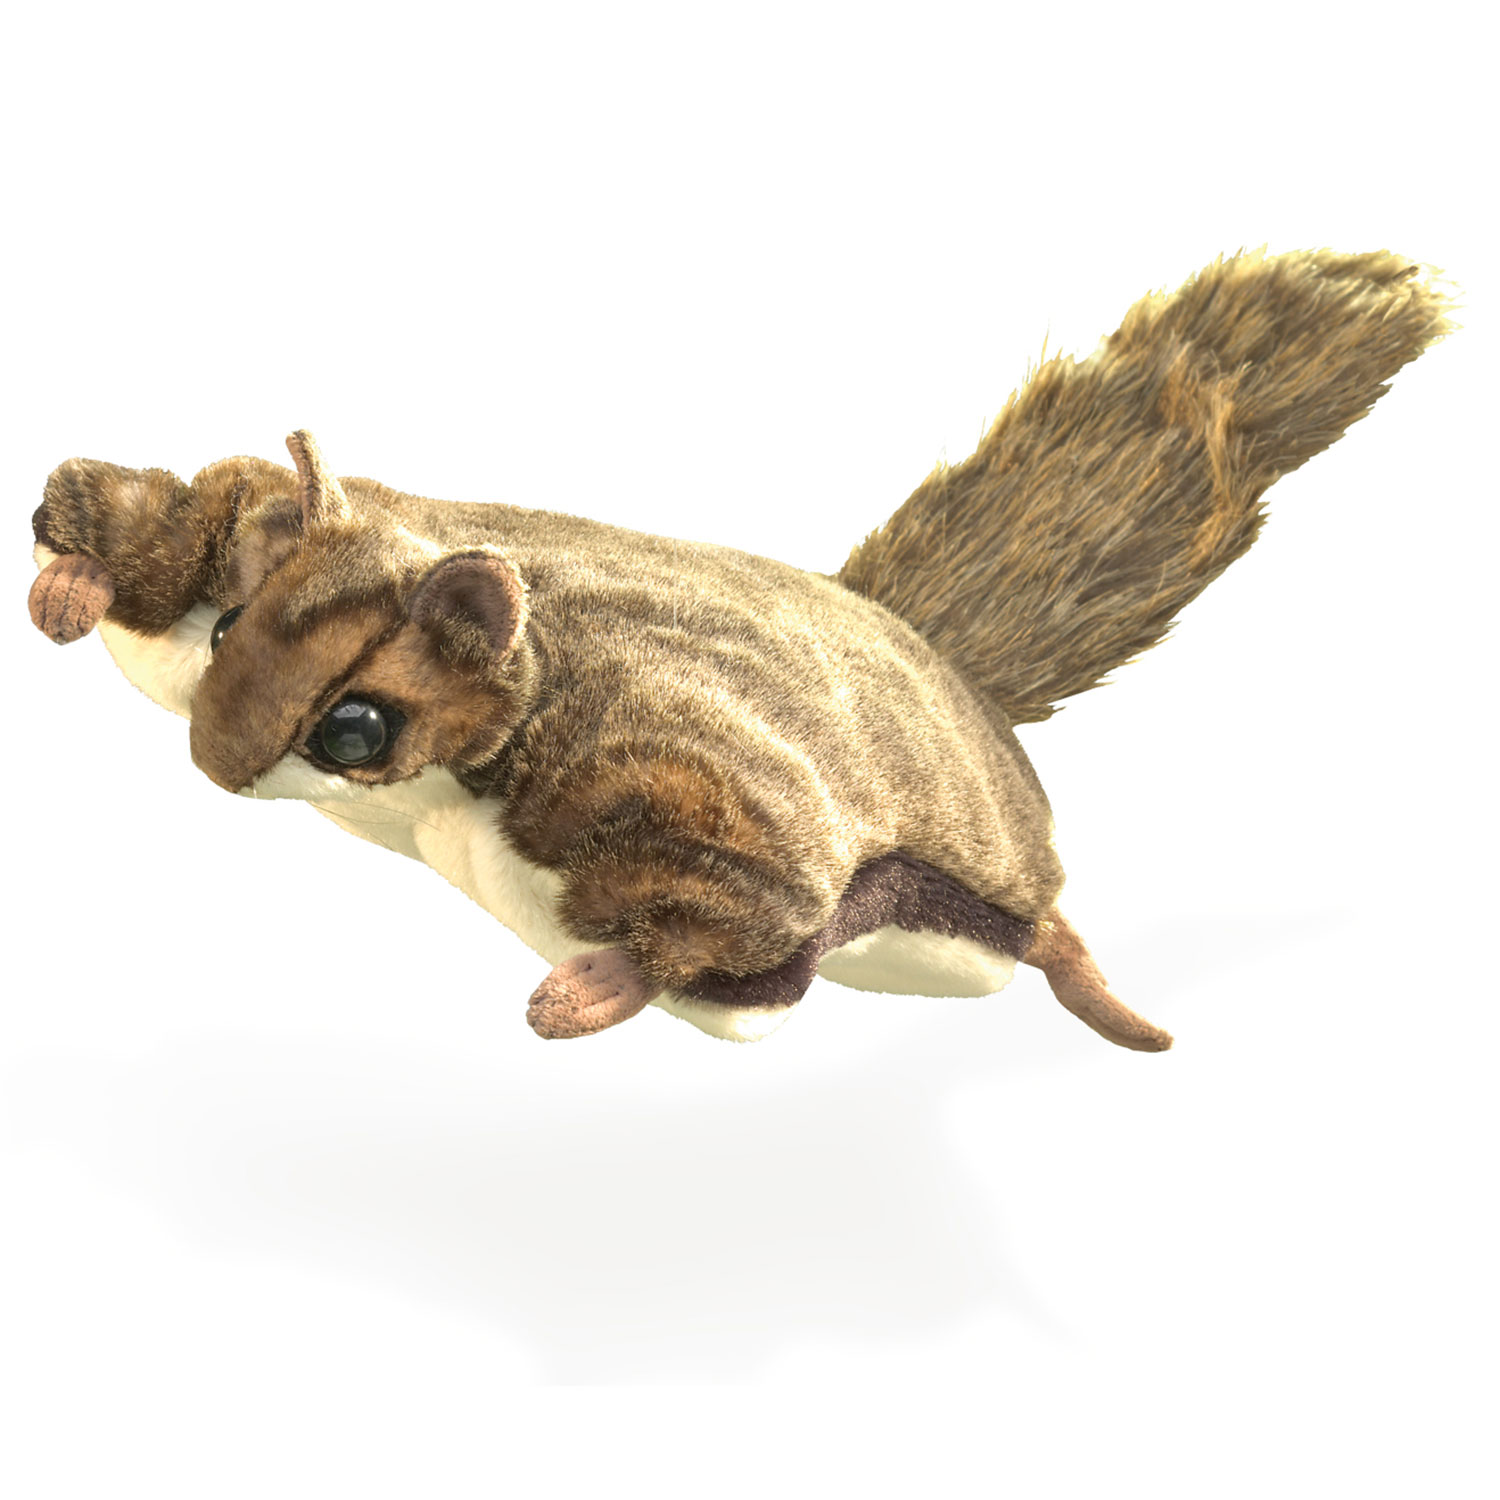 Flughörnchen / Flying Squirrel